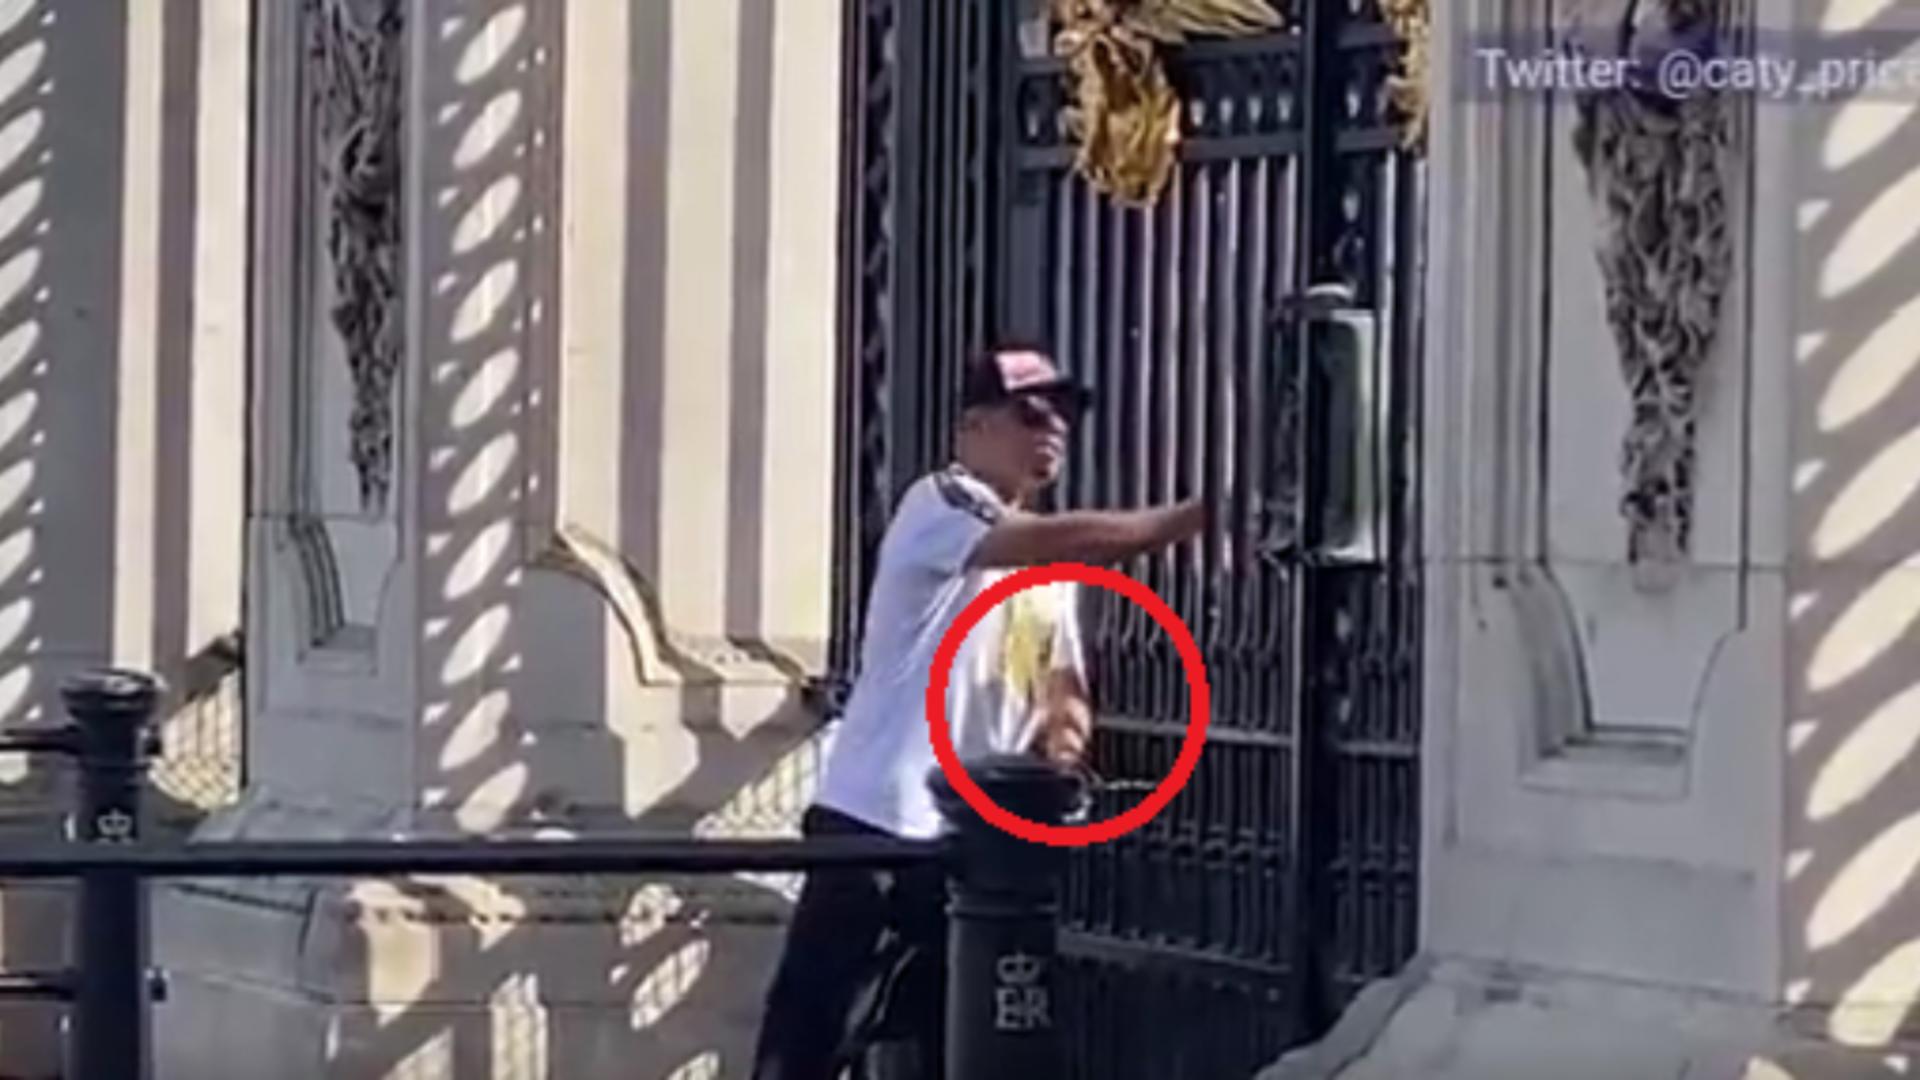 Gest extrem al unui bărbat, în fața Palatului Buckingham din Londra/ Captură video Twitter